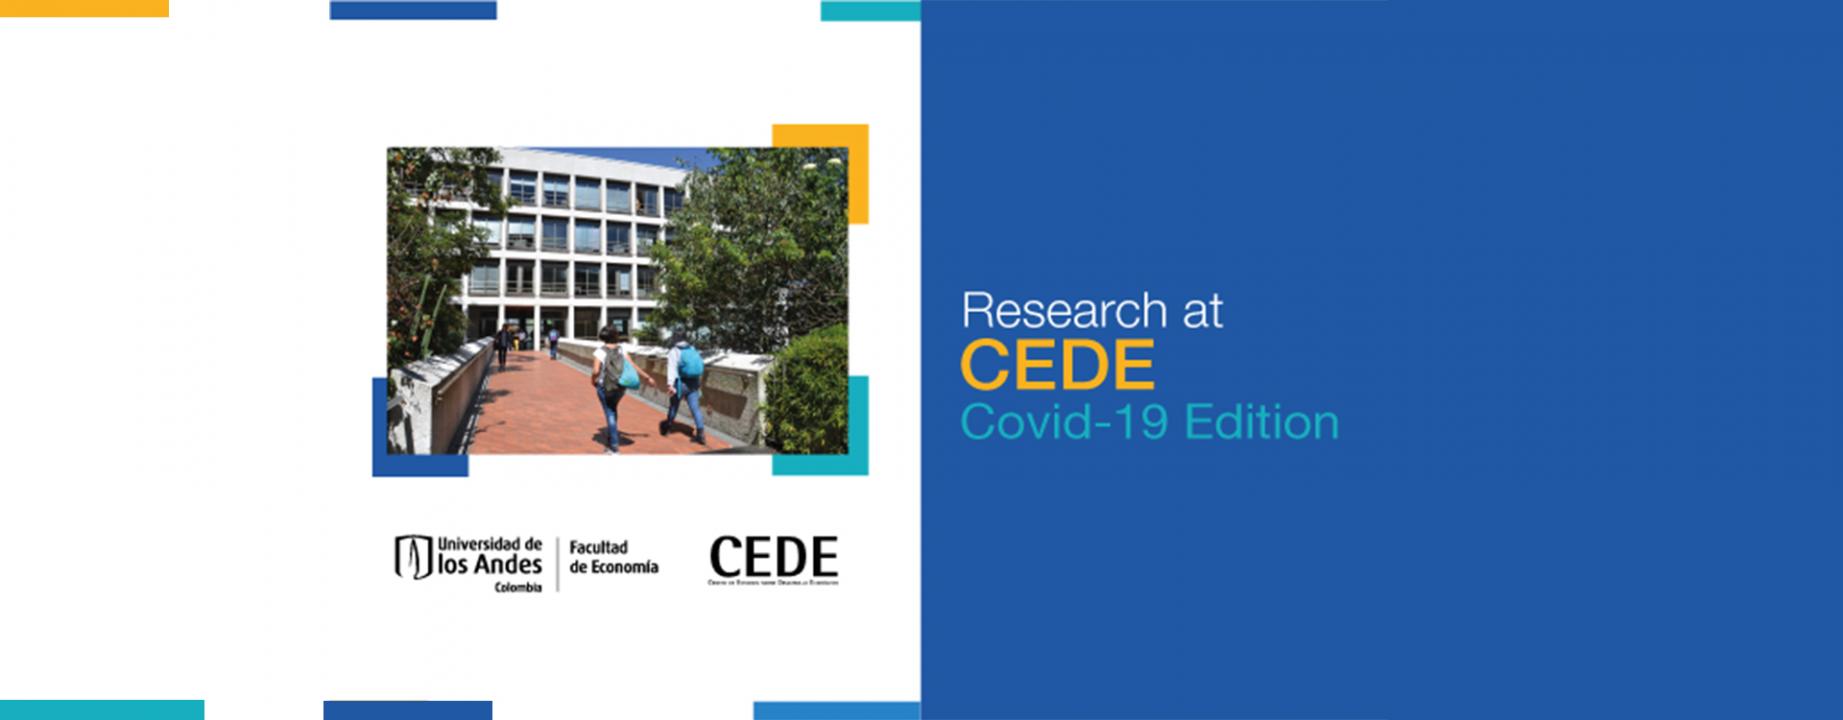 Research at CEDE, Facultad de economía